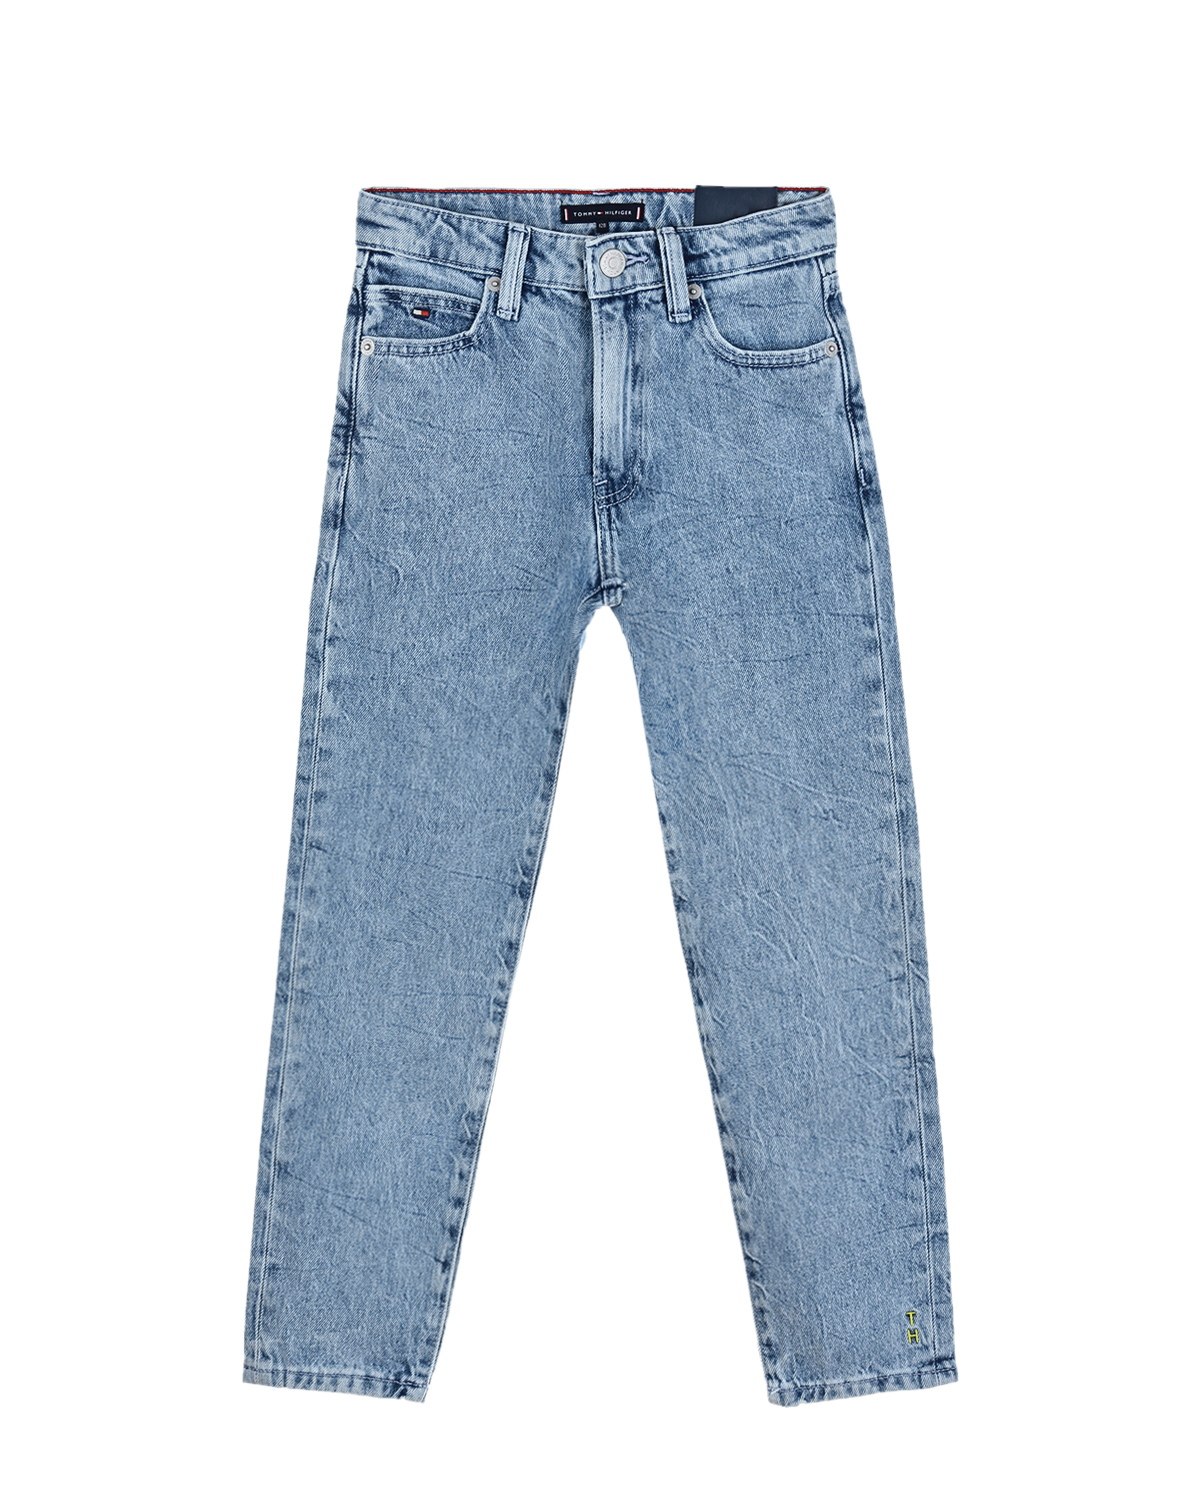 Голубые джинсы Tommy Hilfiger детские, размер 128, цвет голубой